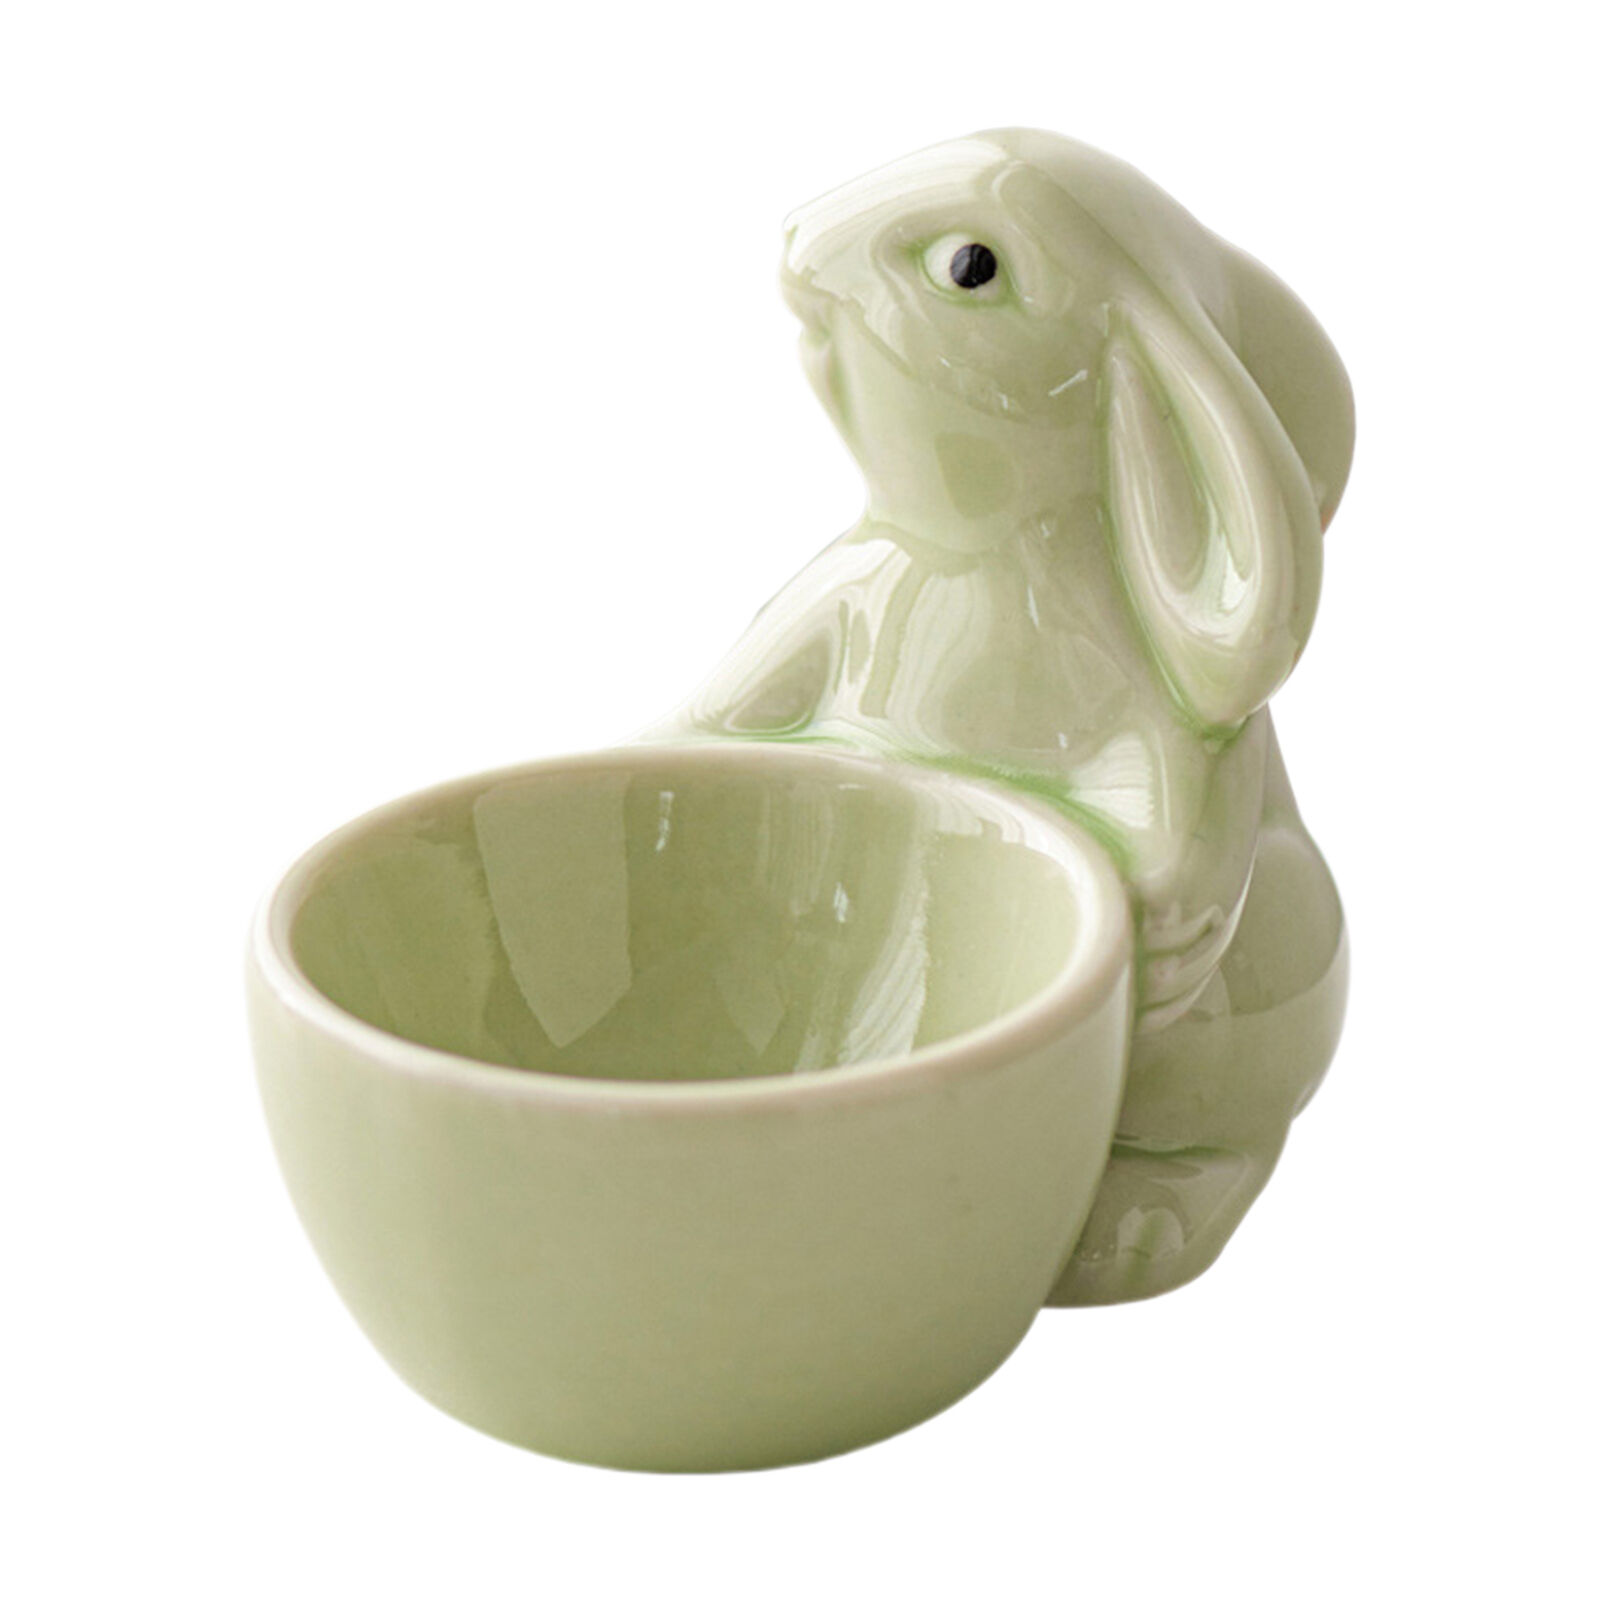 1PC Ceramic Egg Cups Ceramic Egg Holder Cup For Breakfast Egg Holder Stand Gift